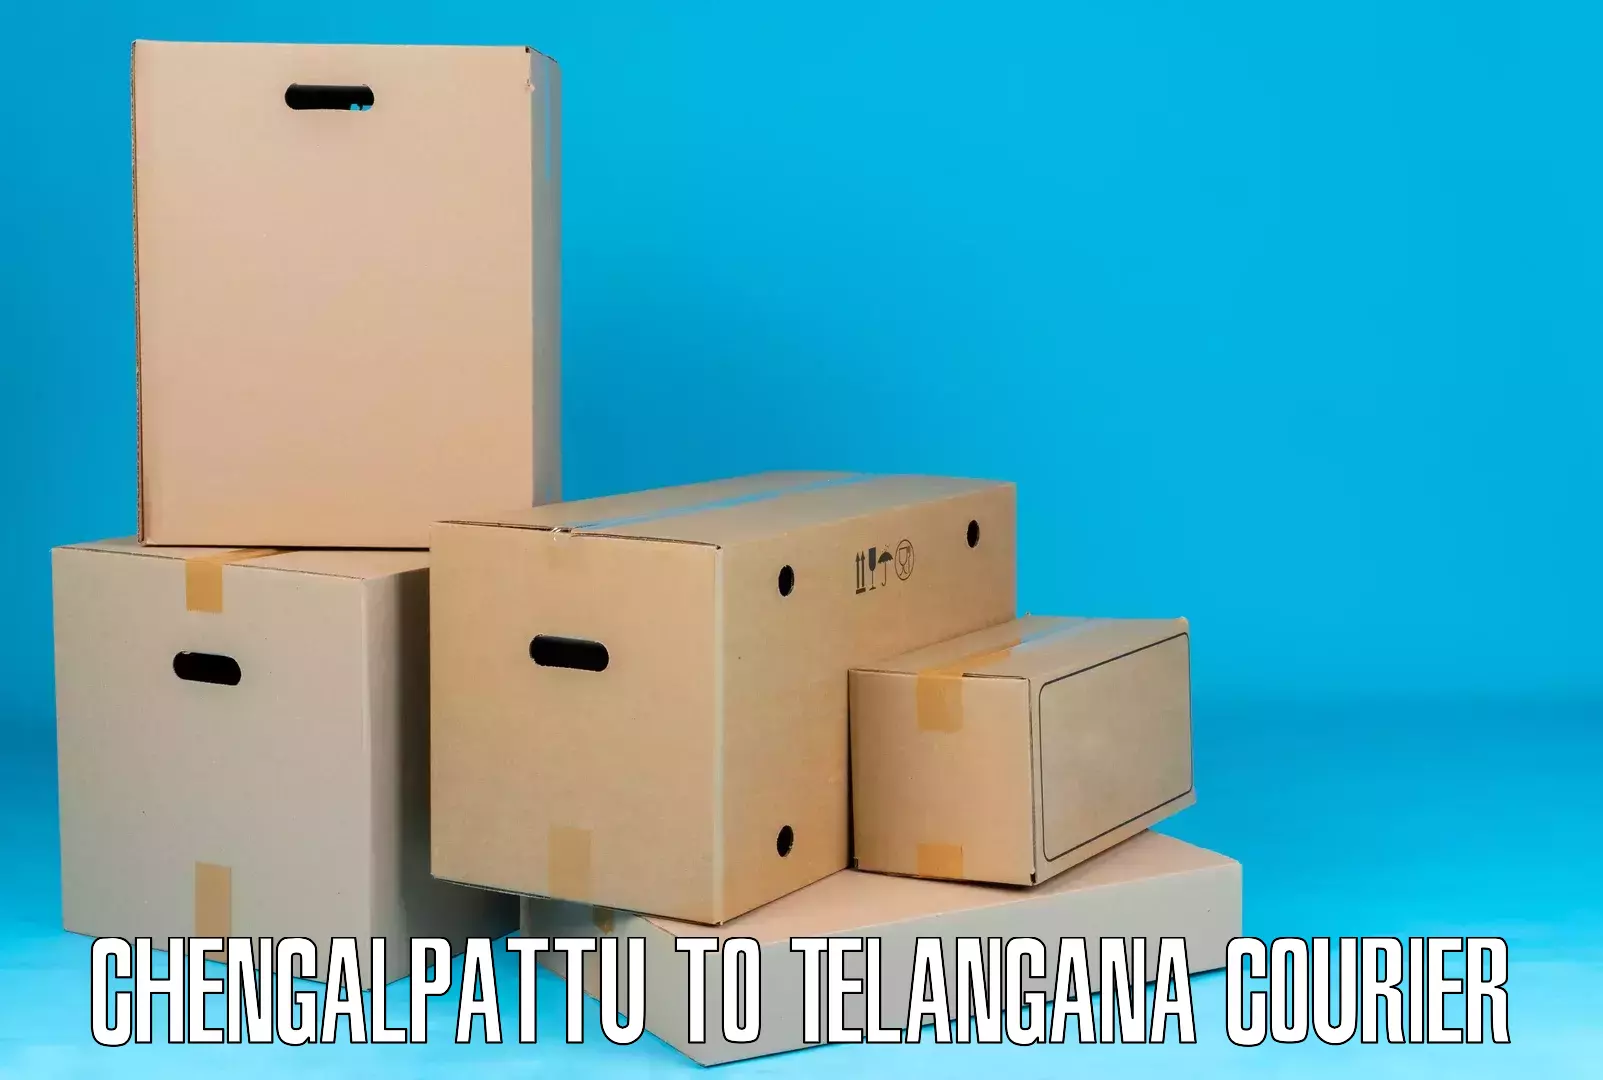 Automated shipping processes Chengalpattu to Telangana